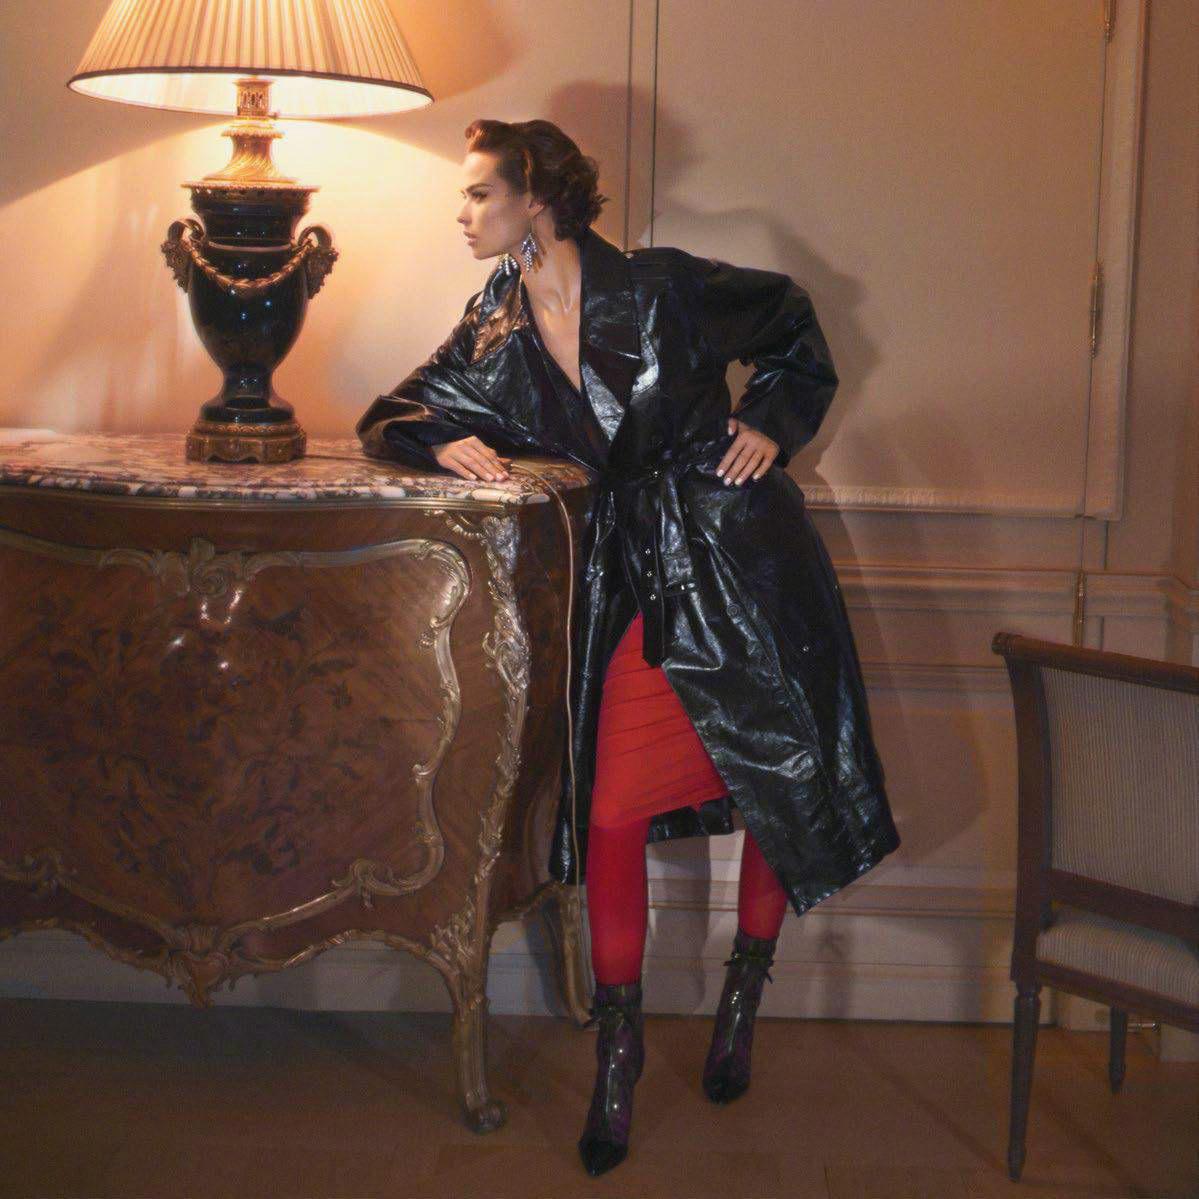 杂志大片 Vogue Paris October 2017 : Birgit Kos by David Sims- 法国版 十月刊-“Room Service”主题​​​​,杂志大片 Vogue Paris October 2017 : Birgit Kos by David Sims. 法国版 十月刊-“Room Service”主题 ​​​​